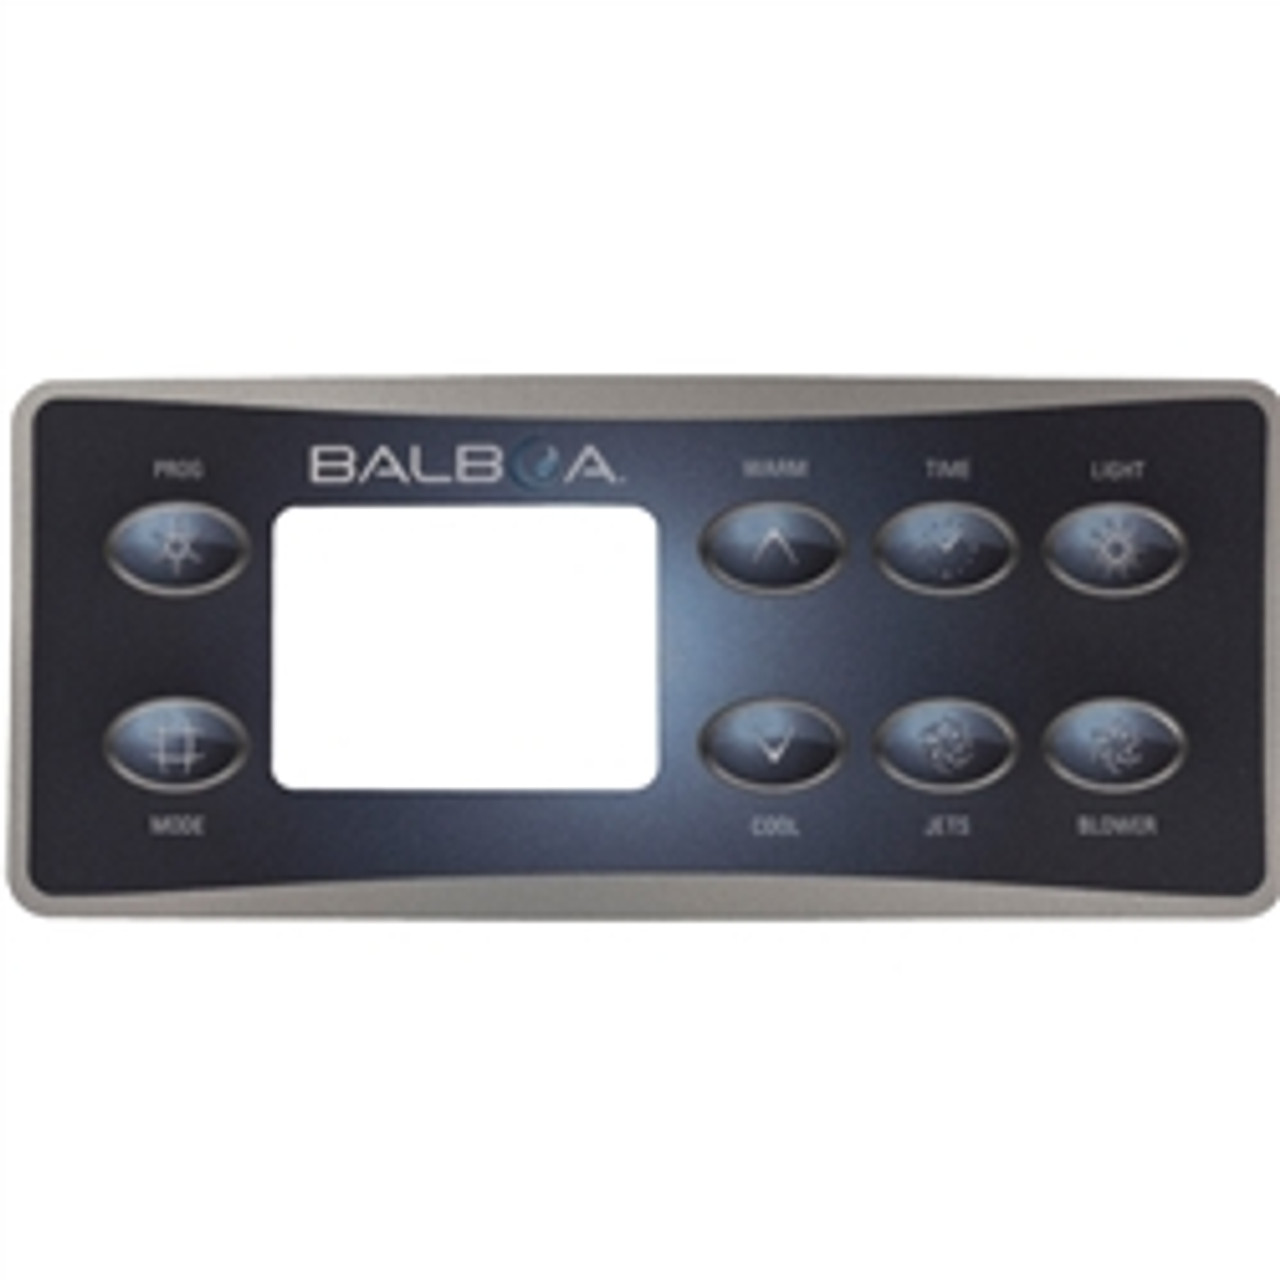 Balboa Overlay - Serial Deluxe & VL801, 8 Button, 10299